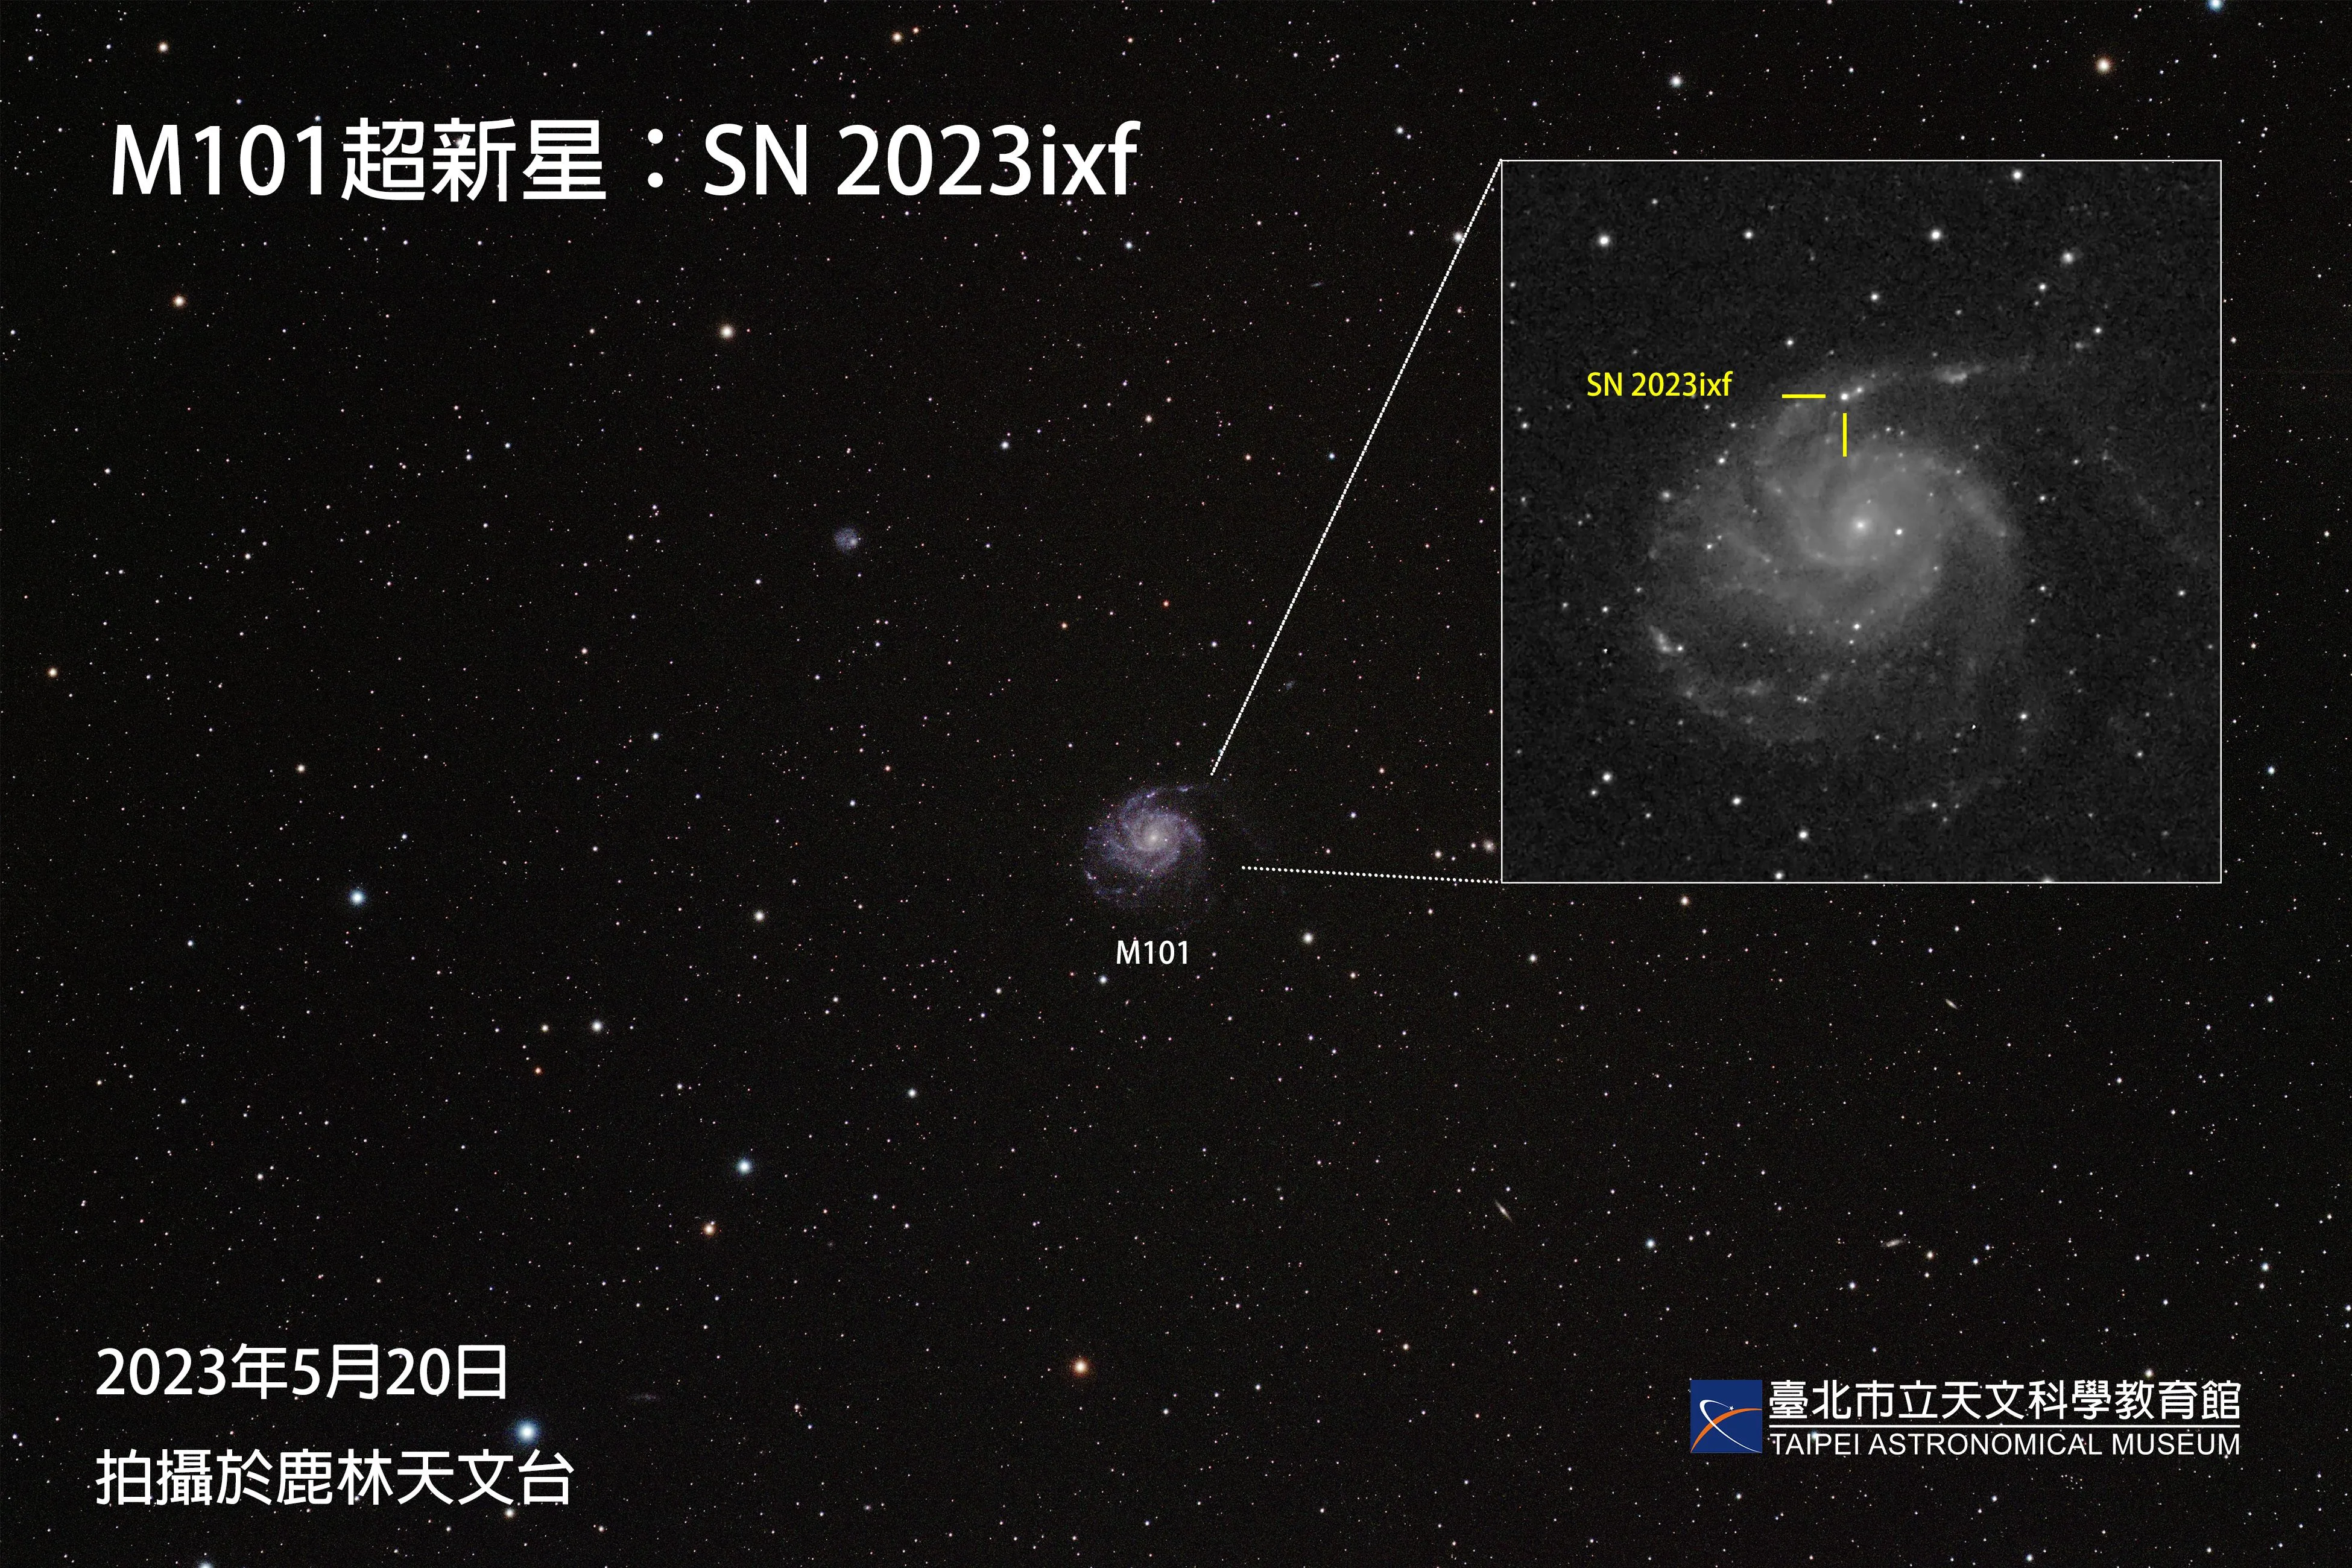 本馆于2023年5月20日拍摄之SN 2023ixf影像，右上方为M101星系放大图，为求清楚看见超新星SN 2023ixf的位置，放大画面以黑白处理。